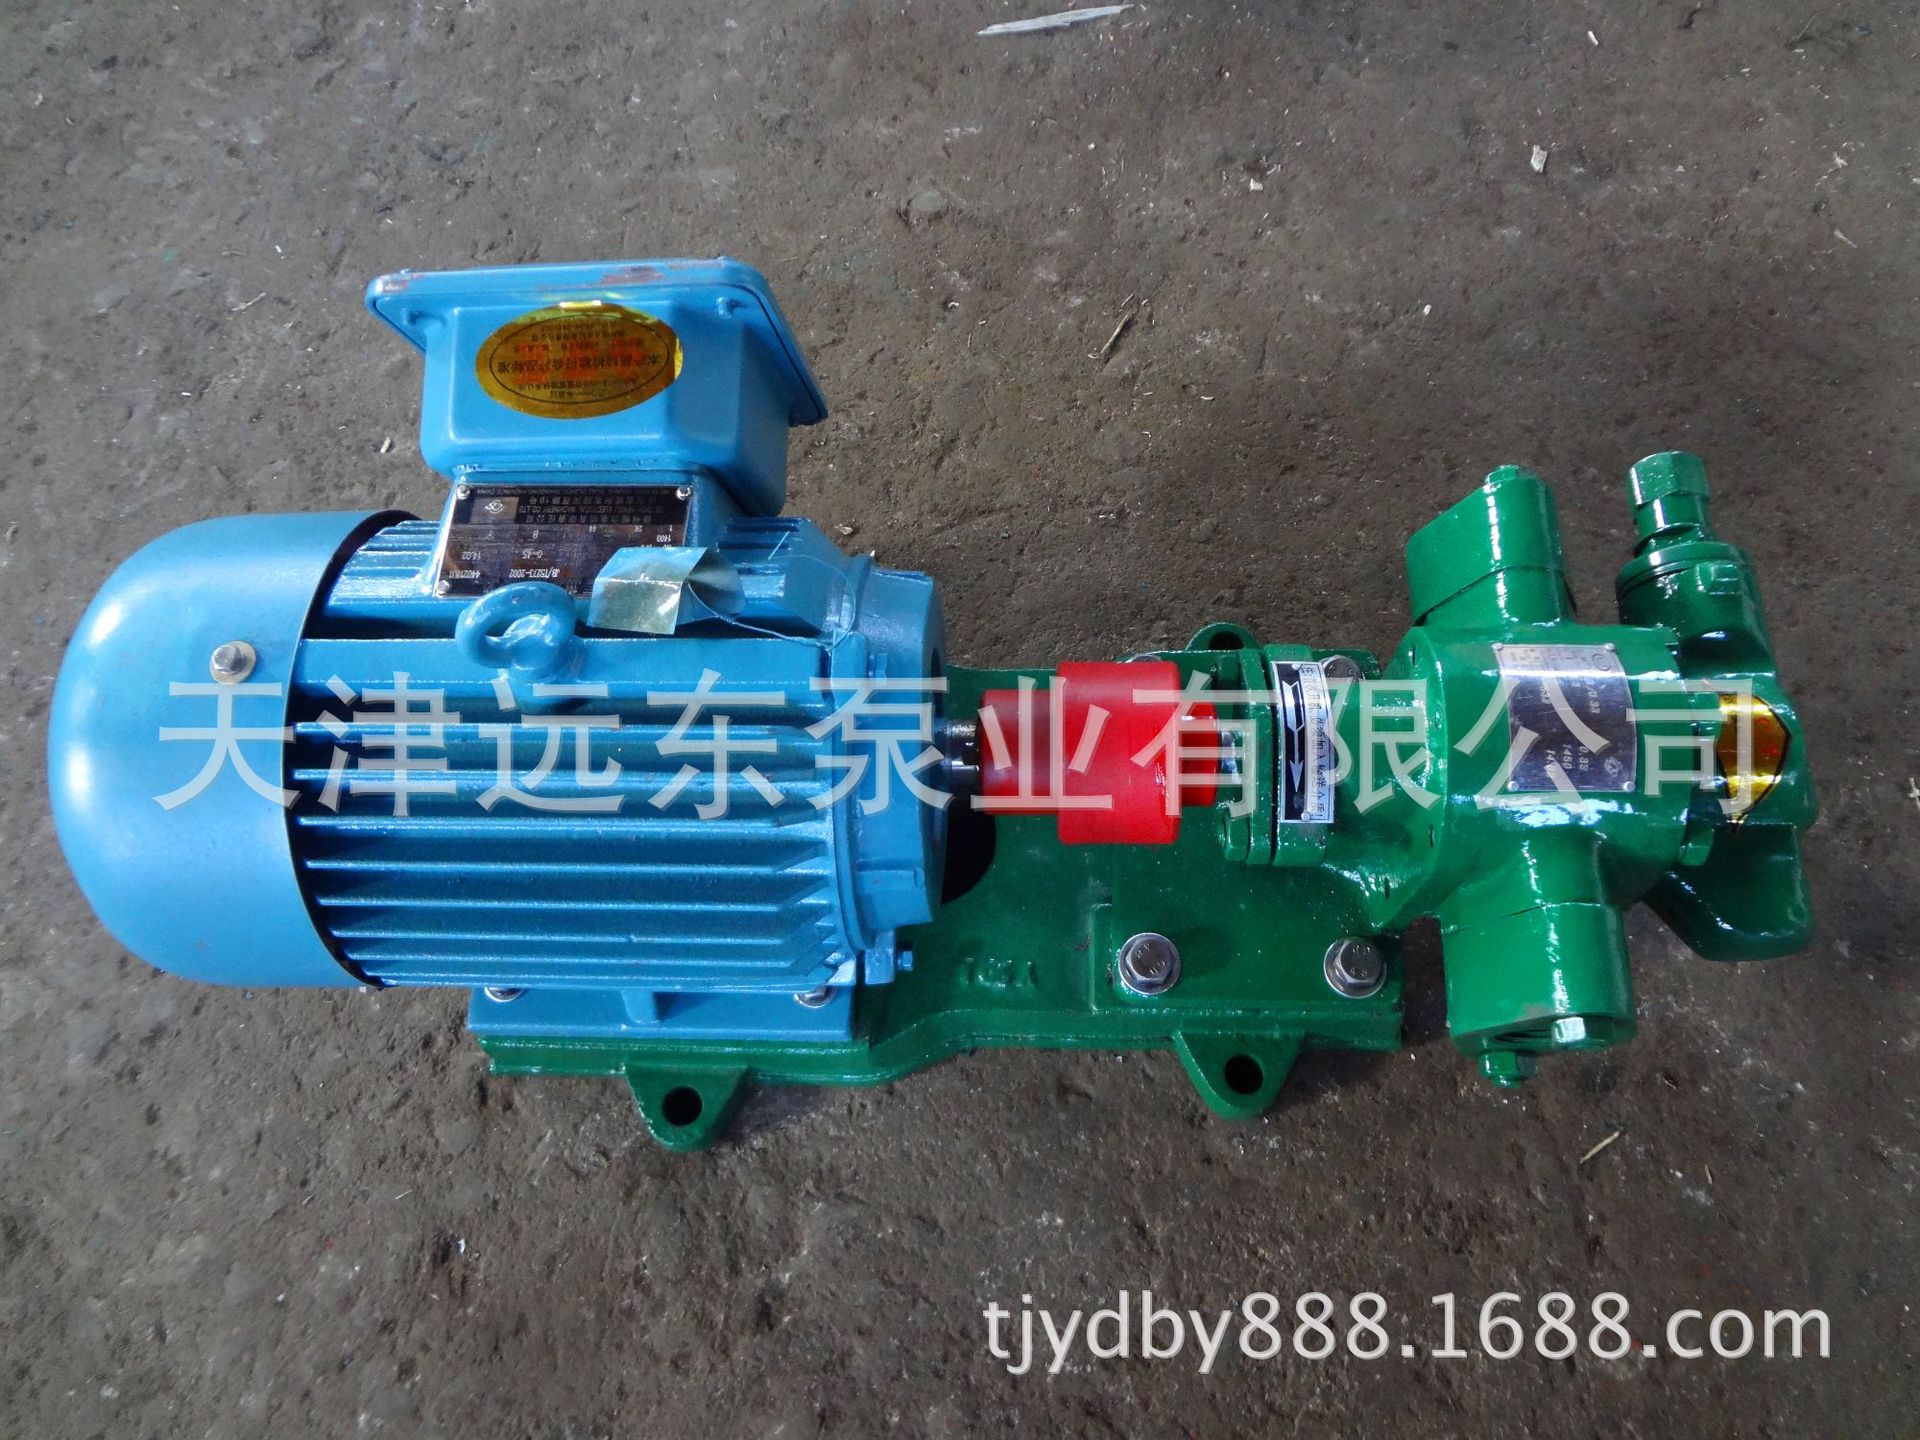 天津远东 KCB-18.3齿轮油泵 润滑油输送泵 远东齿轮泵厂家直销示例图3